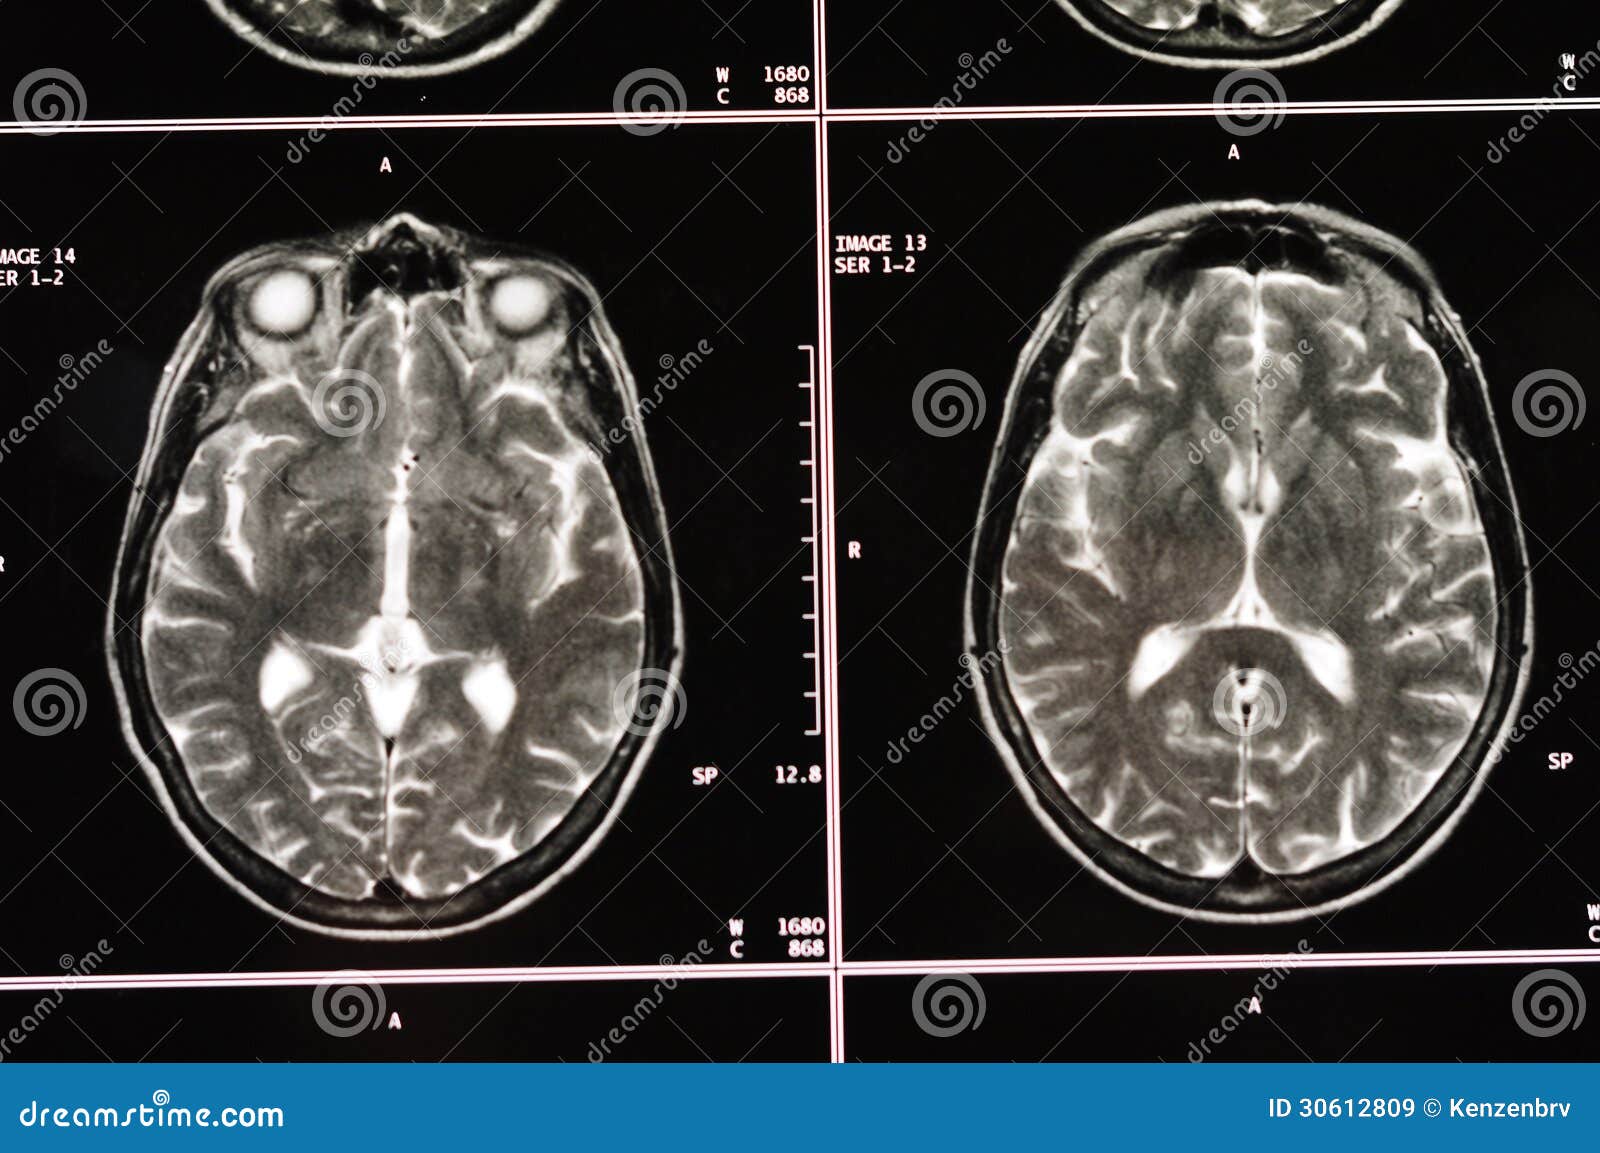 Cerebro MRI. Tomografía del cerebro. Imagen radiológica. Imagen de resonancia magnética